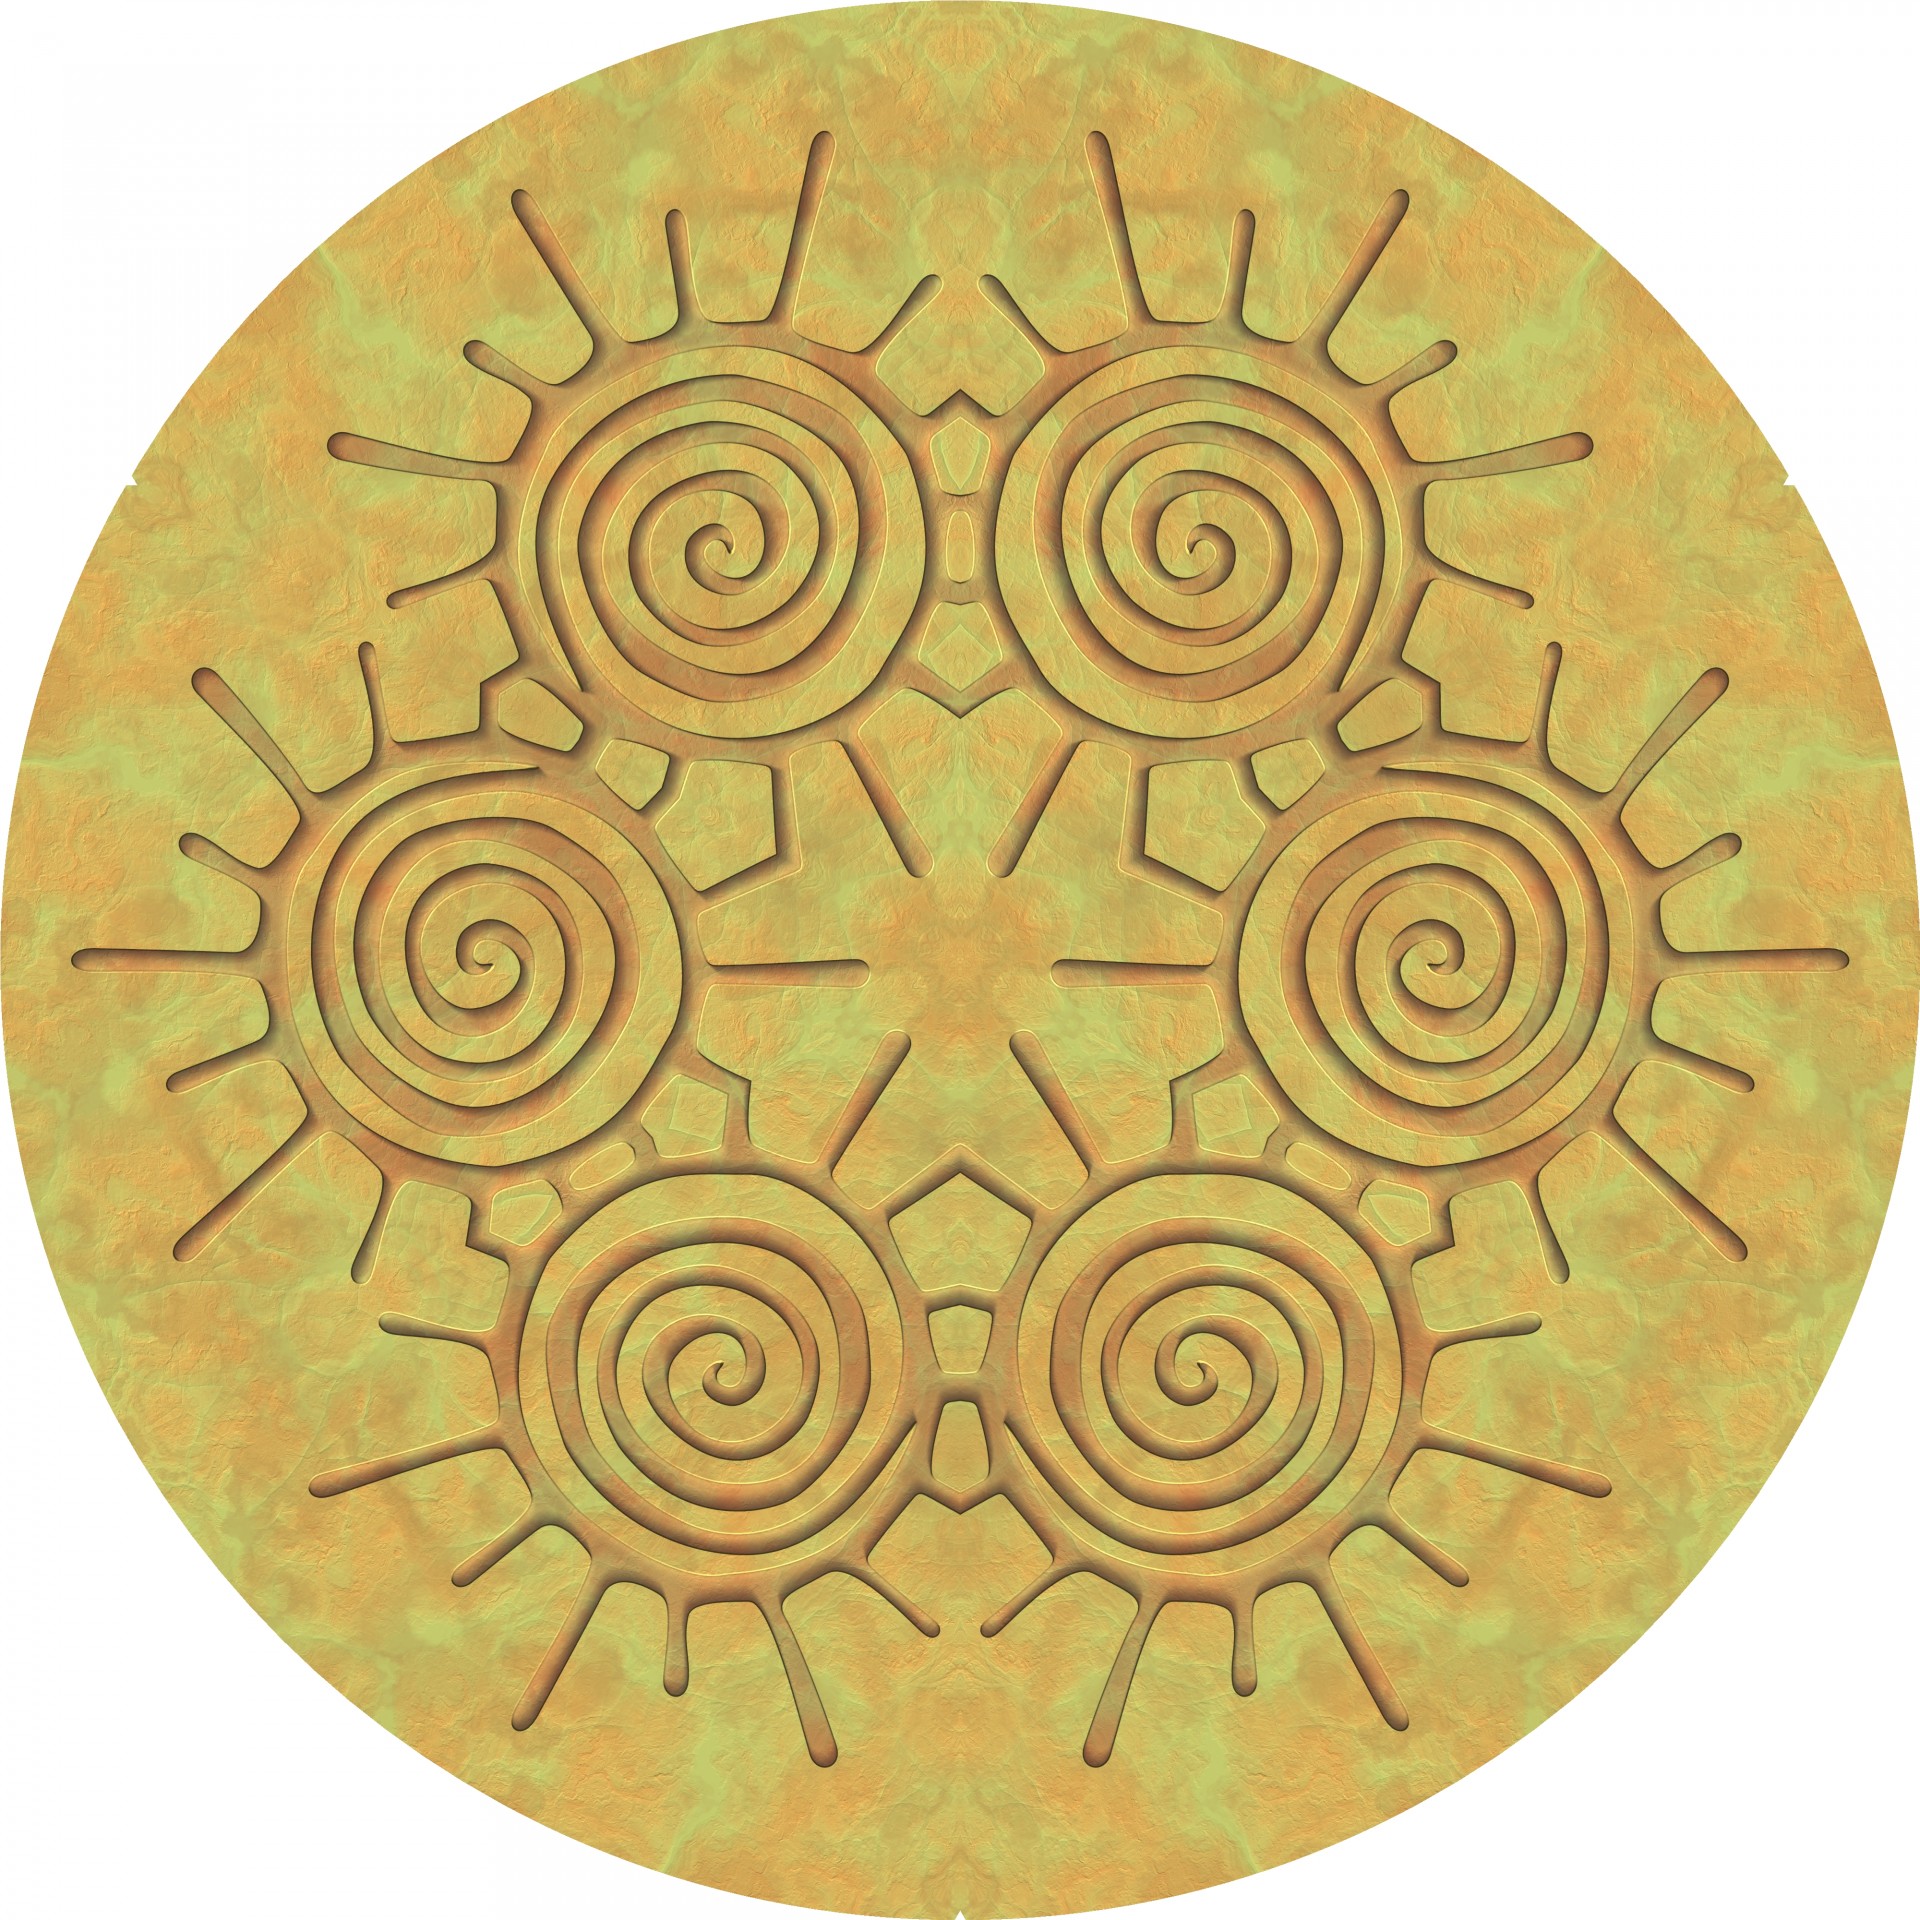 Spirals In A Circle